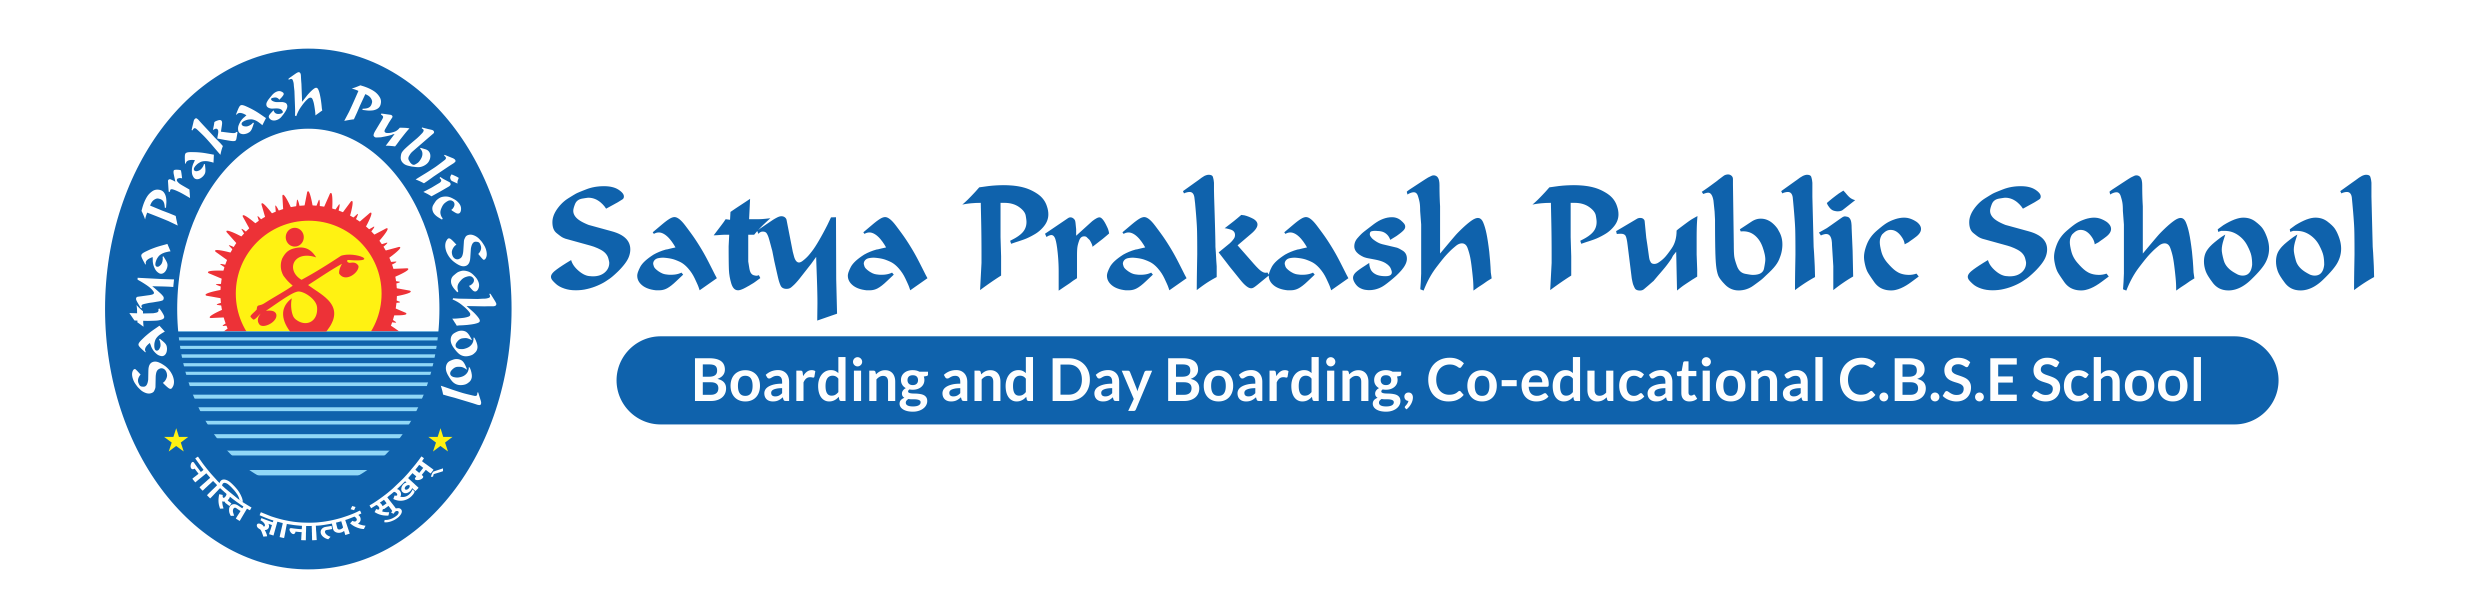 Satya Prakash Public School, Jabalpur. Boarding - Day Boarding